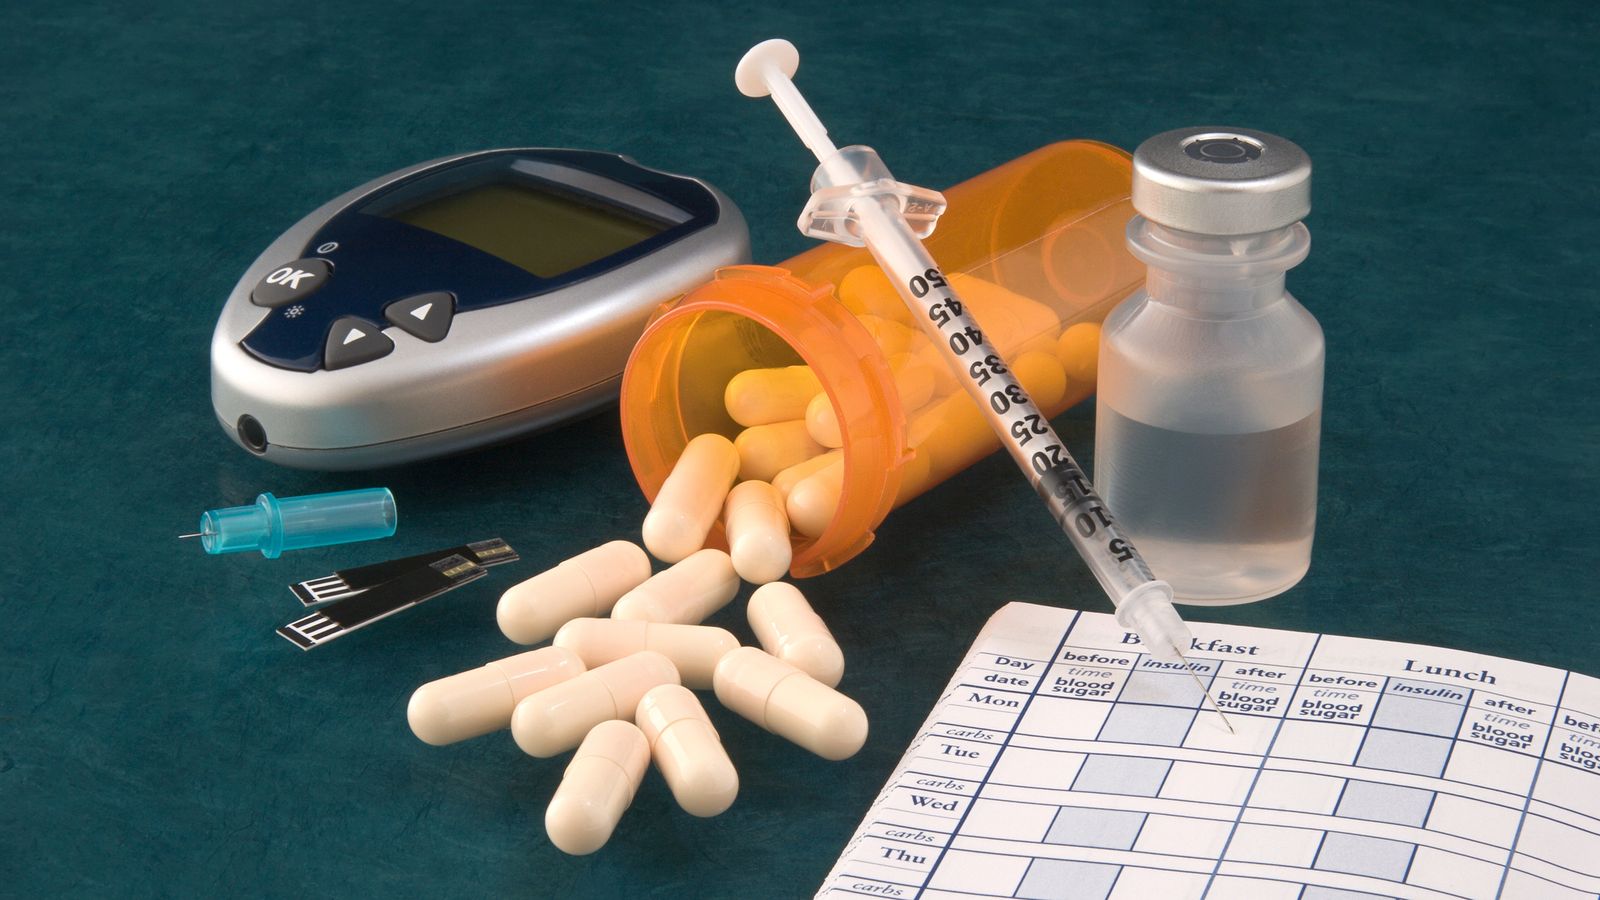 Nebenwirkungen: Viele Diabetiker setzen ihre Medikamente ab